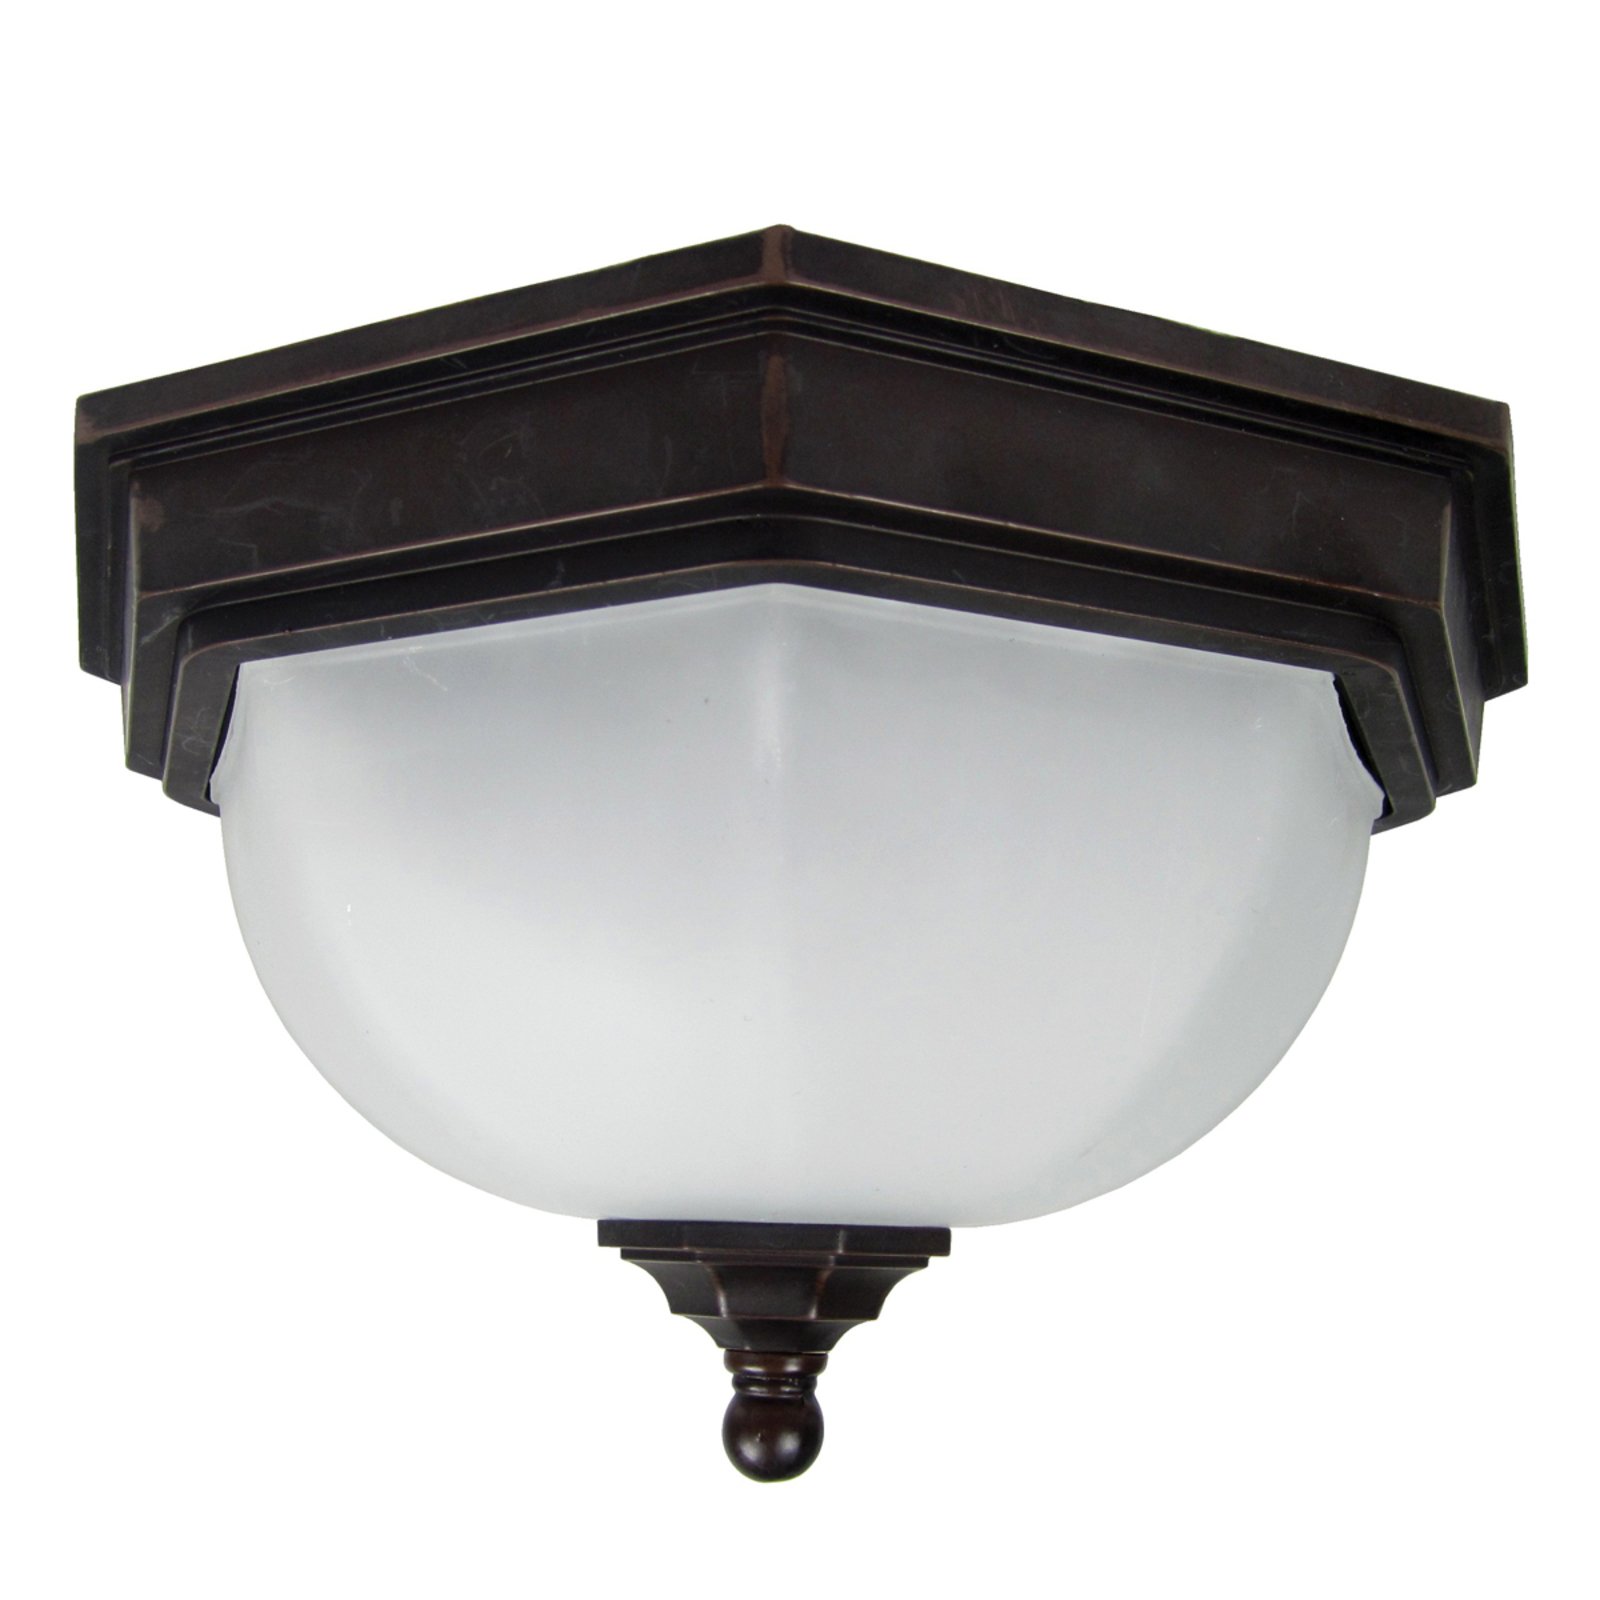 Fairford vanjska stropna svjetiljka